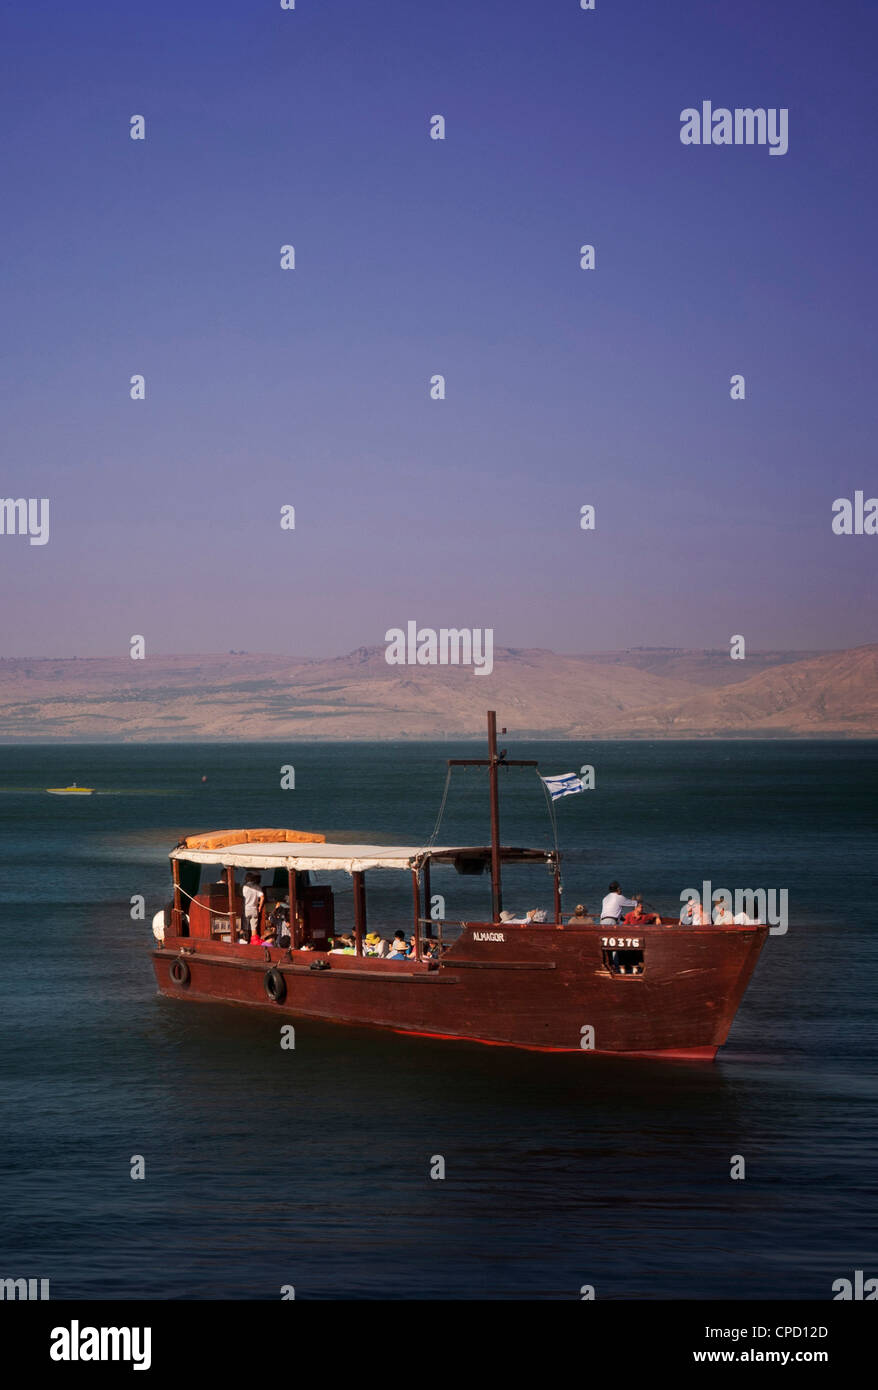 Bateau de tourisme sur le lac de Tibériade, la Mer de Galilée, au nord d'Israël, Israël, Moyen Orient Banque D'Images